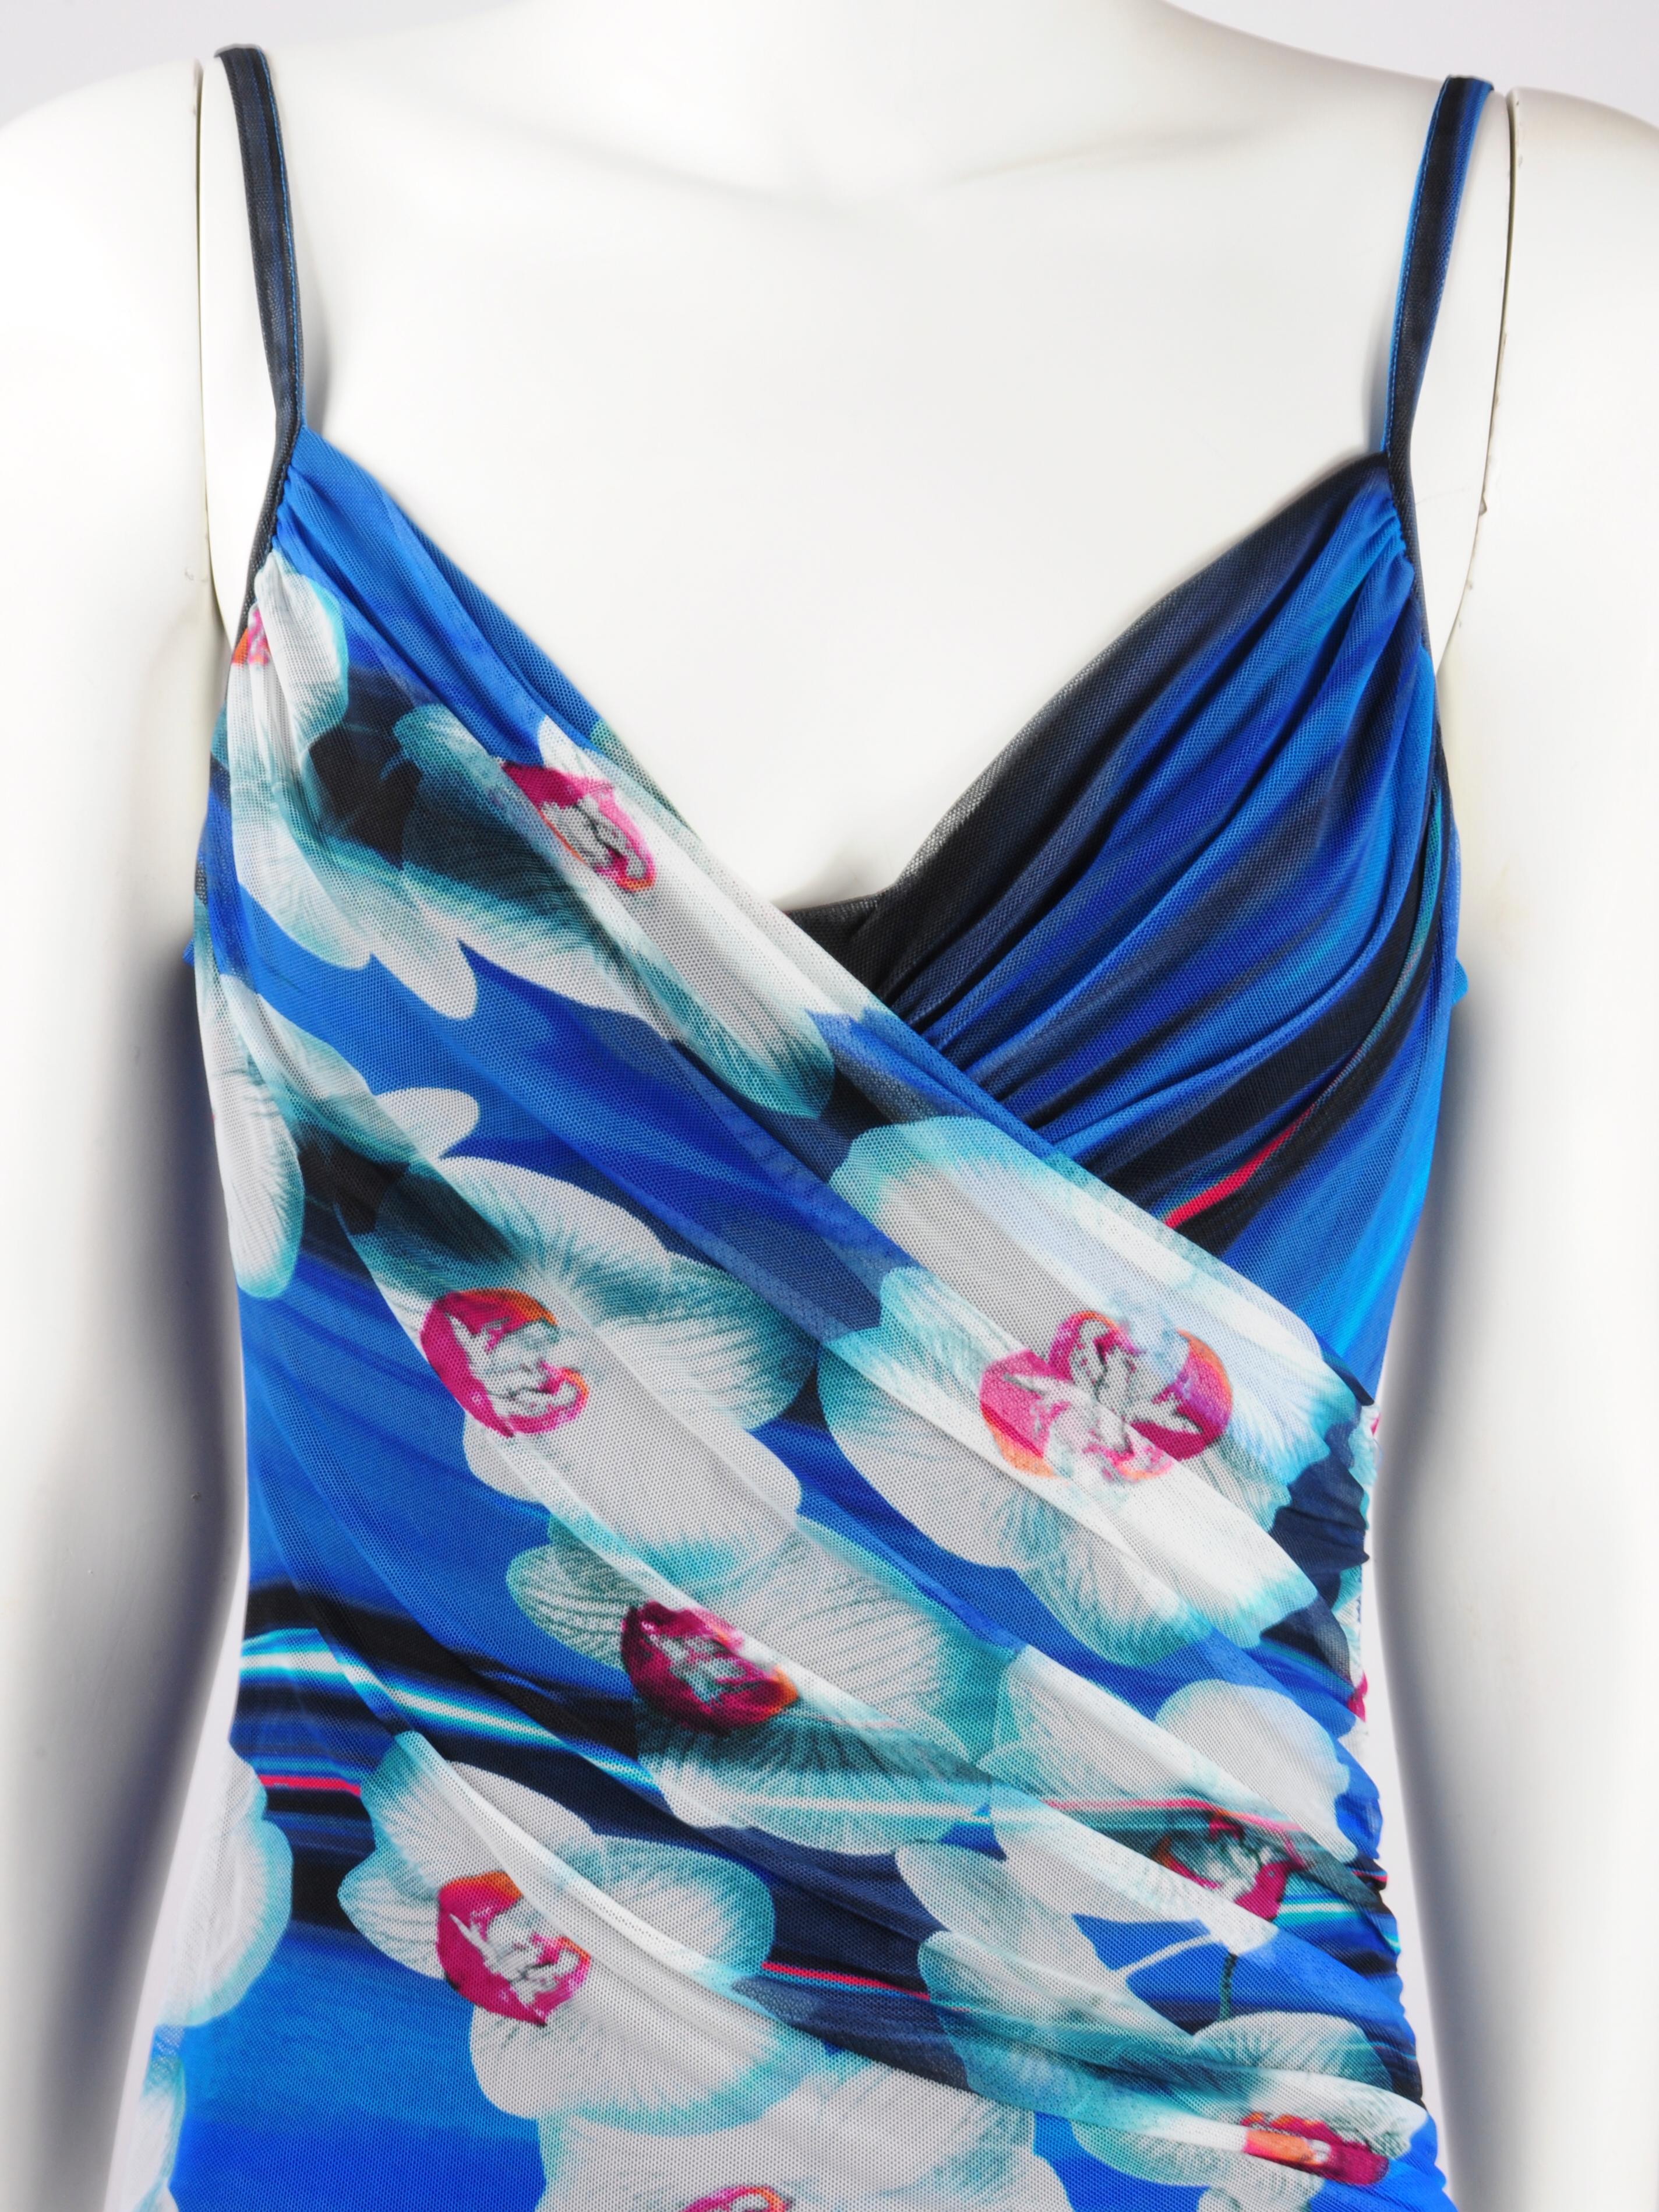 La Perla drapierter Netz-Badeanzug in Blau mit futuristisch bedruckten Orchideenblüten.  Dieser Badeanzug von La Perla zeichnet sich durch einen floralen Druck mit weißen und fuchsia-rosafarbenen Orchideen auf der einen Seite und einen kobaltblauen